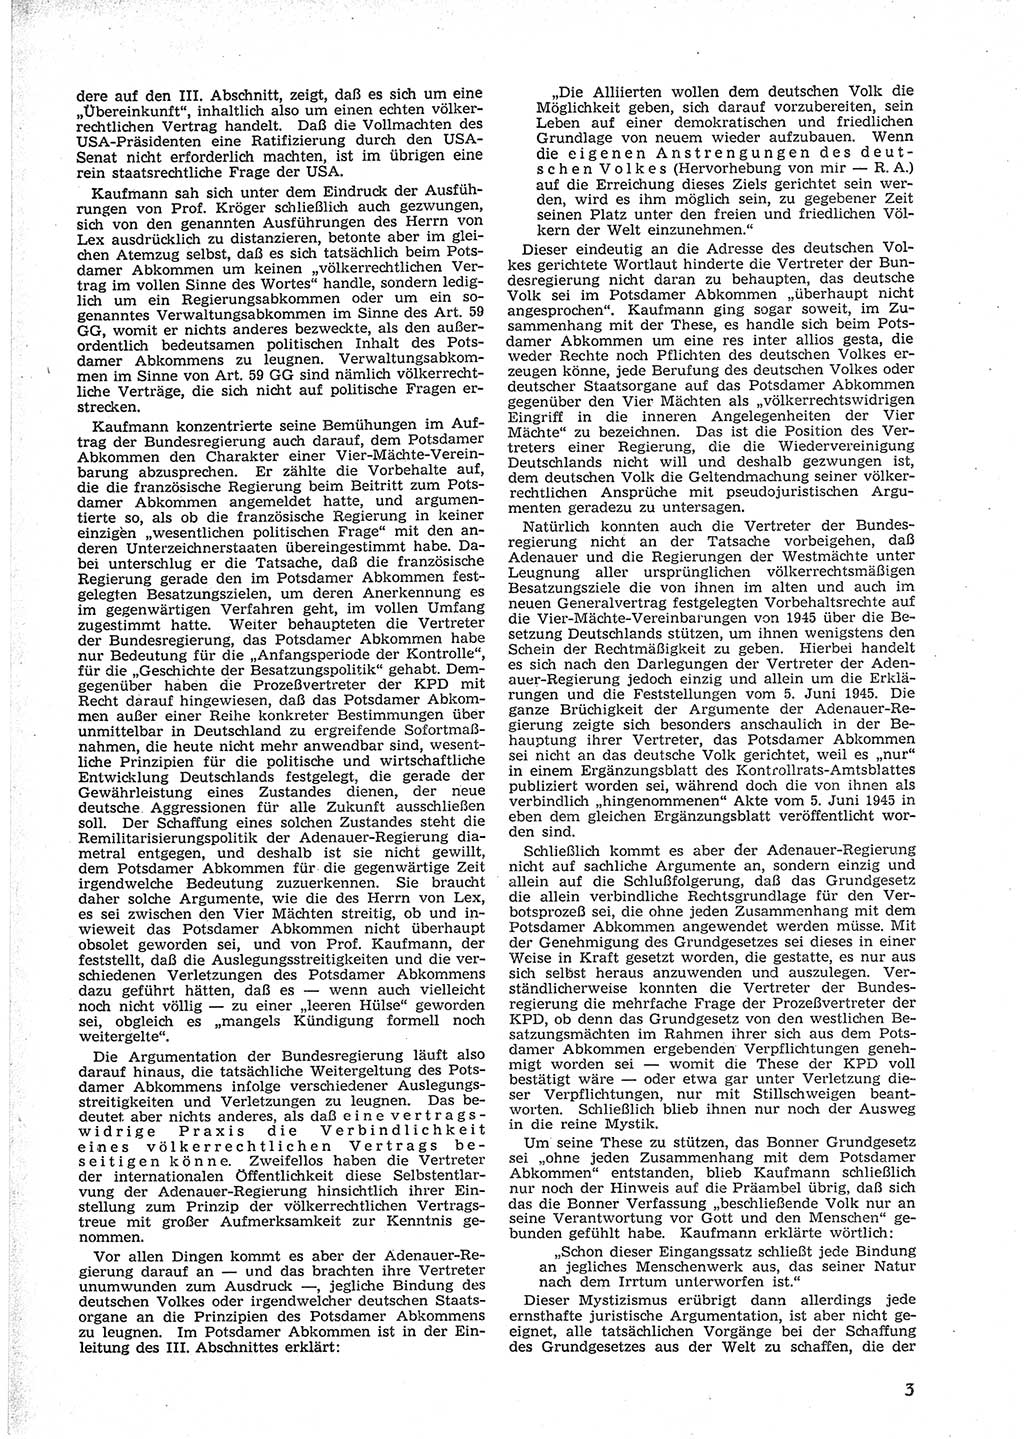 Neue Justiz (NJ), Zeitschrift für Recht und Rechtswissenschaft [Deutsche Demokratische Republik (DDR)], 9. Jahrgang 1955, Seite 3 (NJ DDR 1955, S. 3)